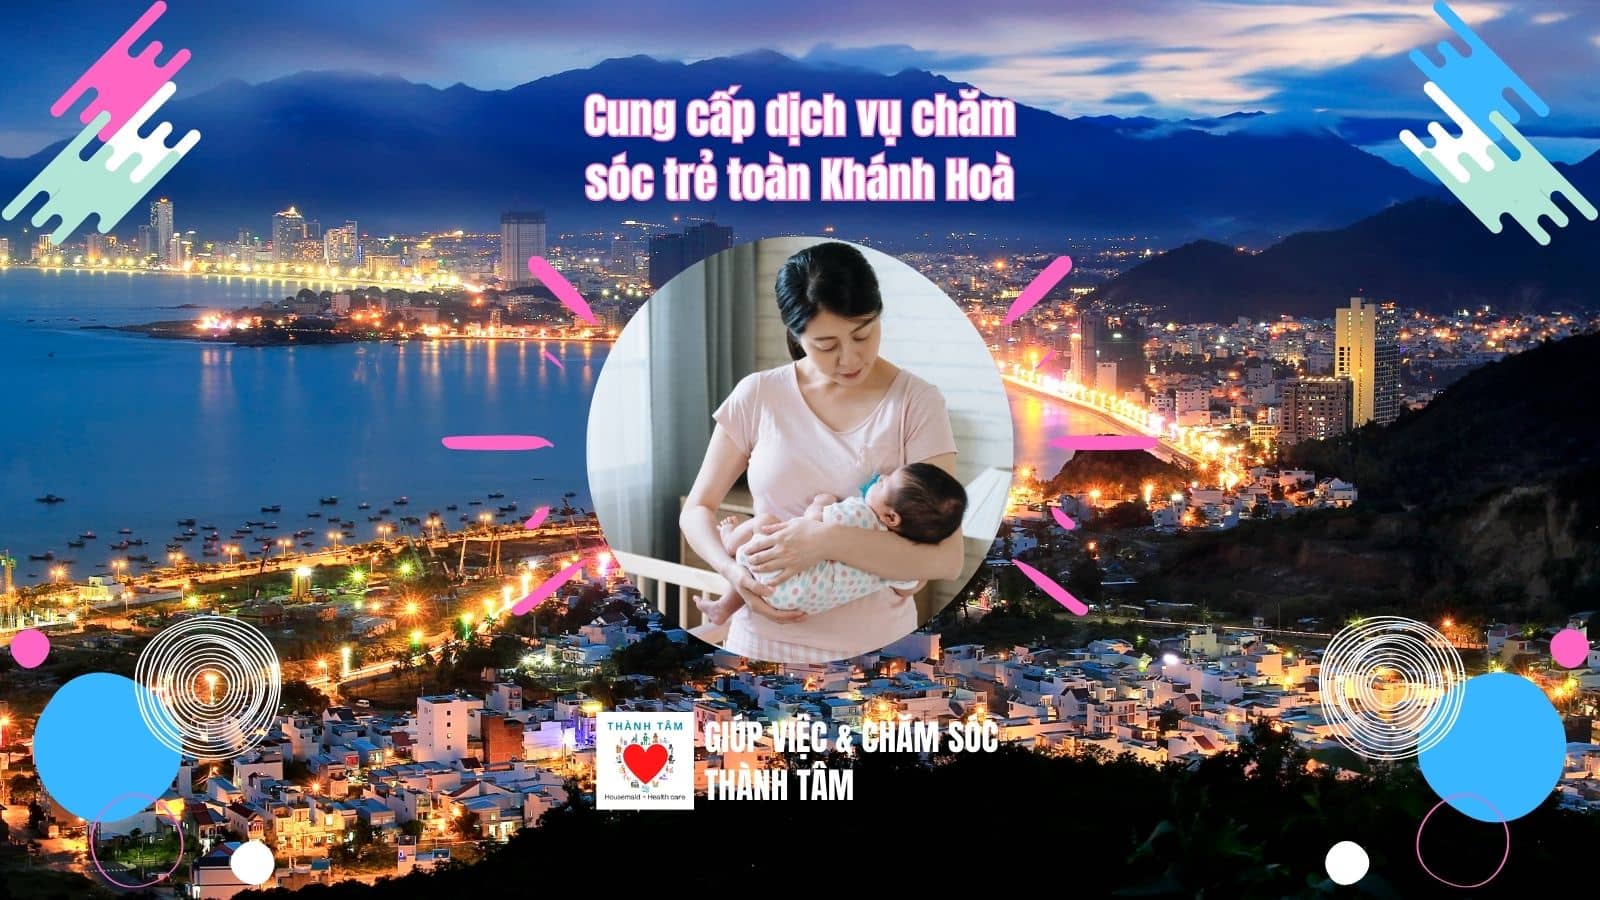 Cung cấp dịch vụ chăm sóc trẻ 24h cho Tp. Nha Trang và toàn tỉnh Khánh Hoà